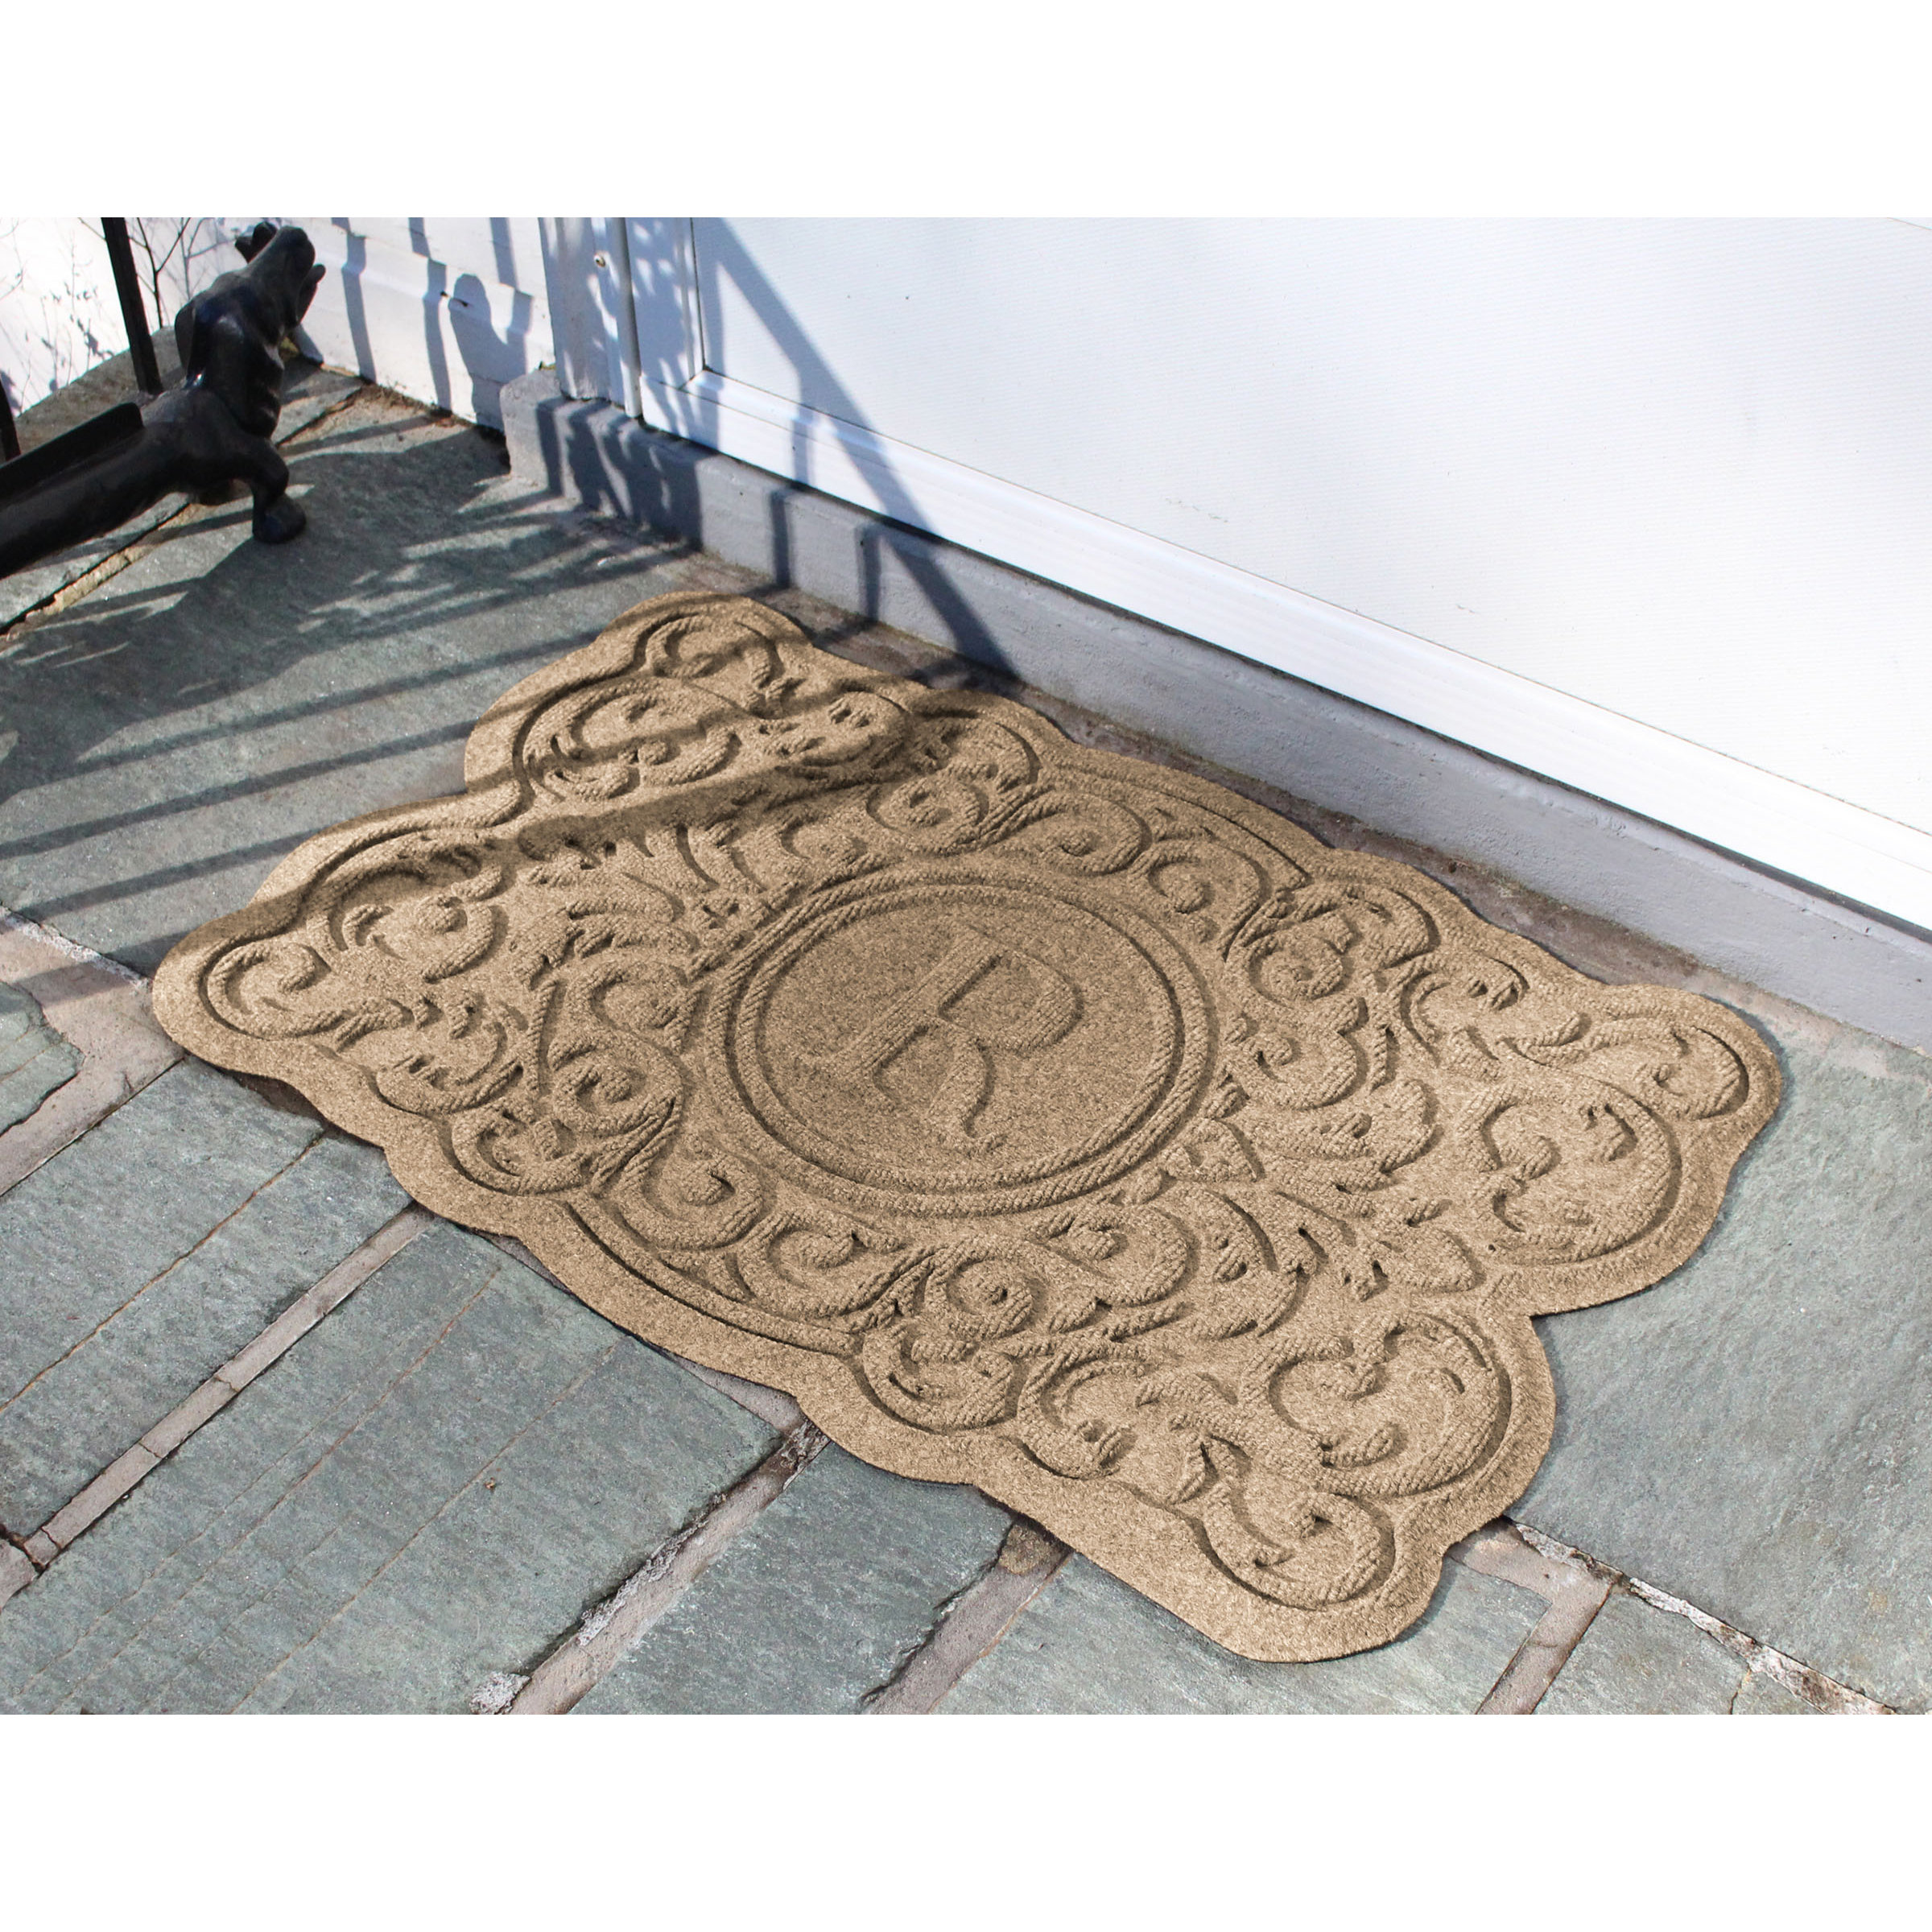 https://assets.wfcdn.com/im/05341615/compr-r85/2402/240220542/waterhog-2x3-personalized-indoor-outdoor-doormatt.jpg